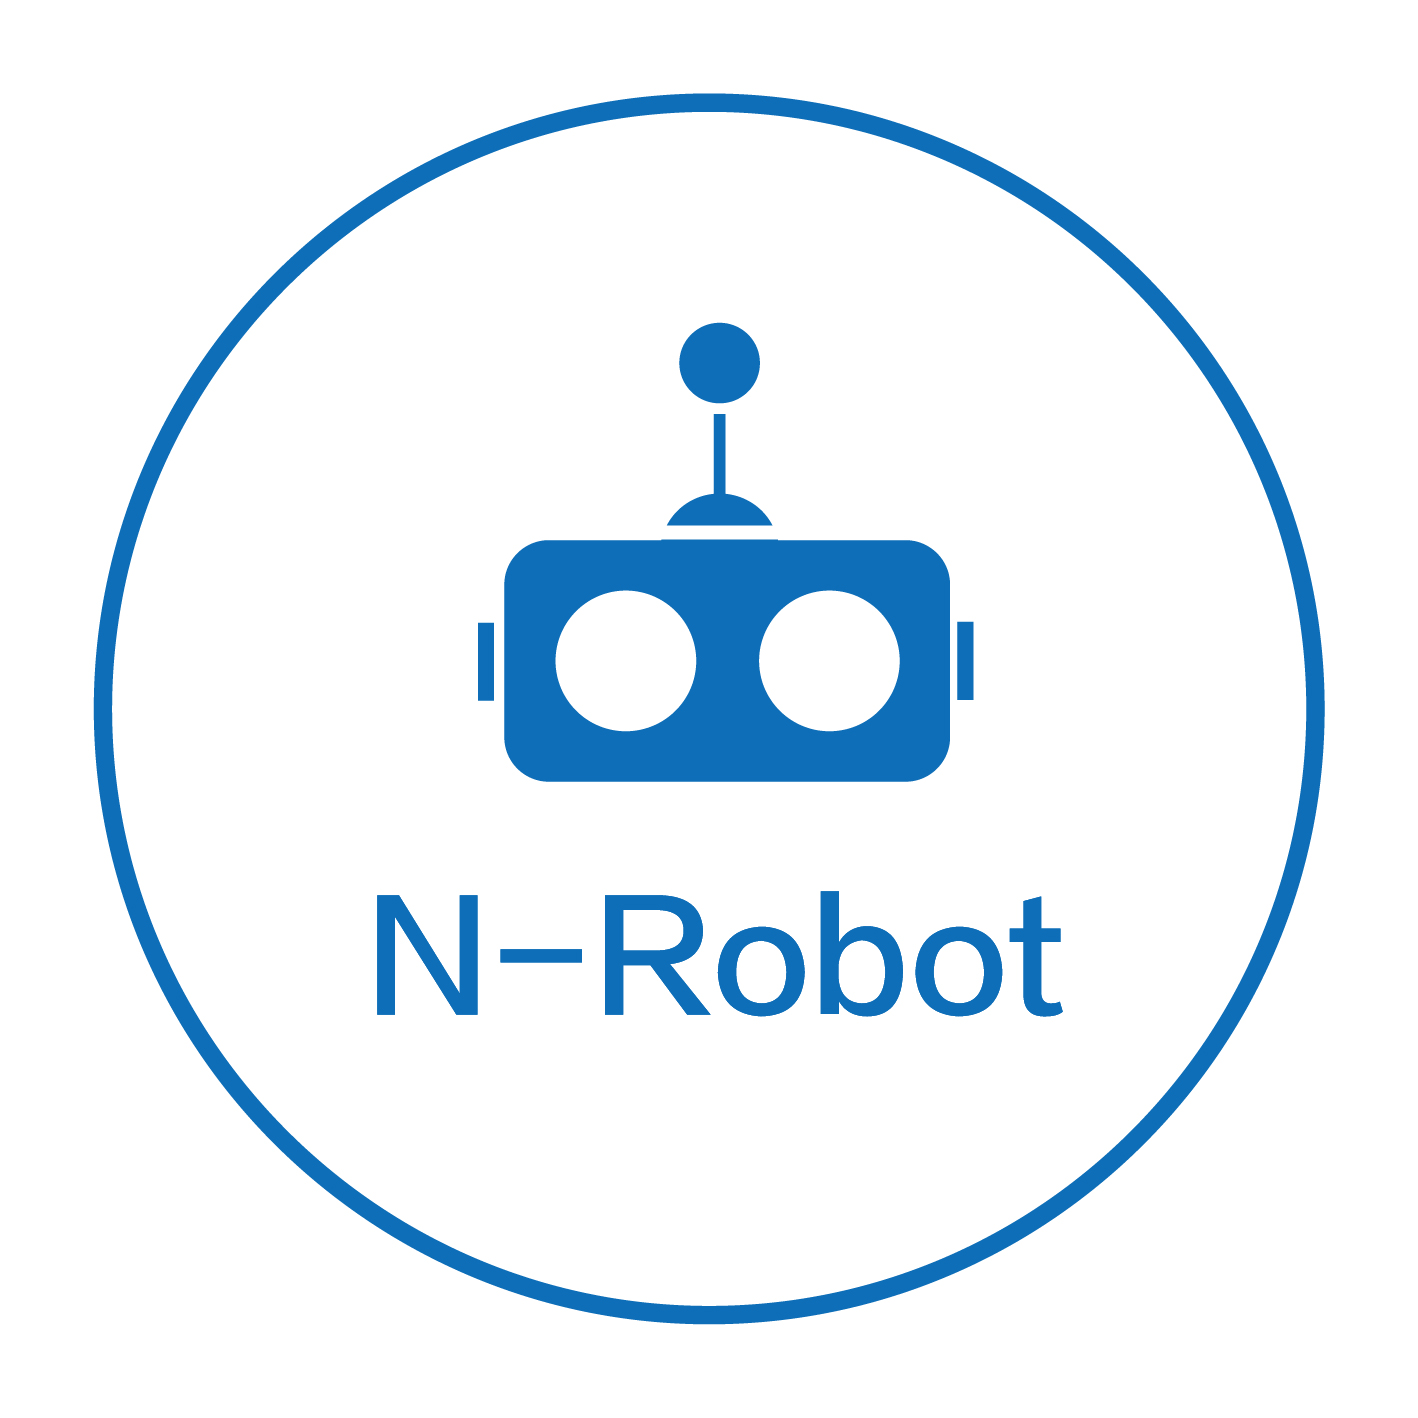 N-Robot